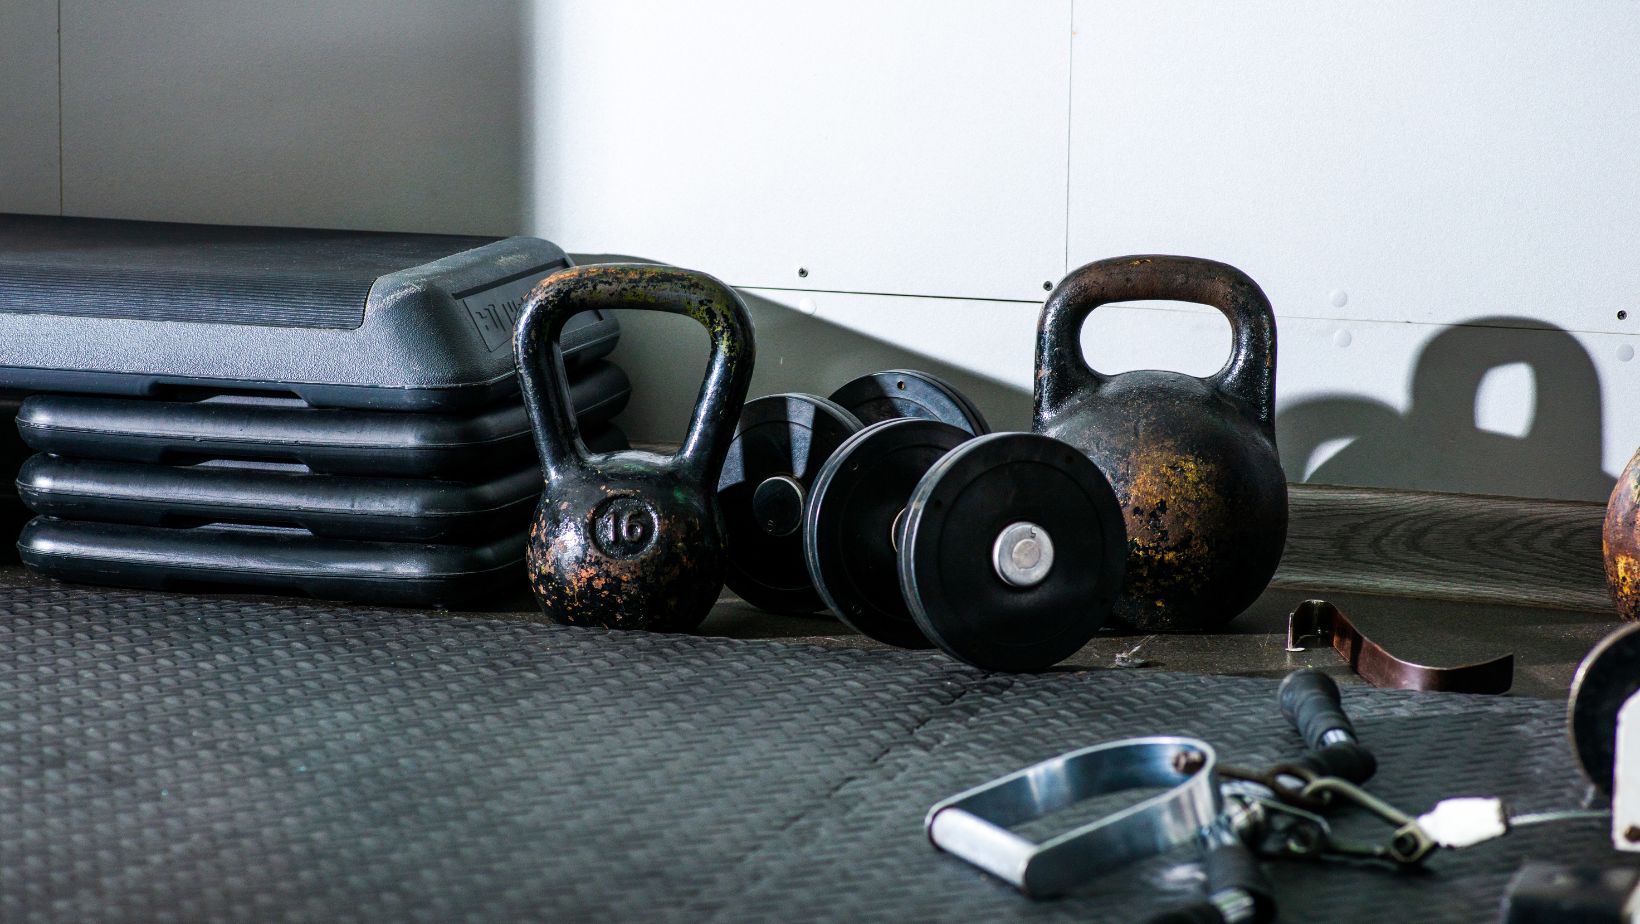 Kettle bells and dumbbells on floor near gym equipment